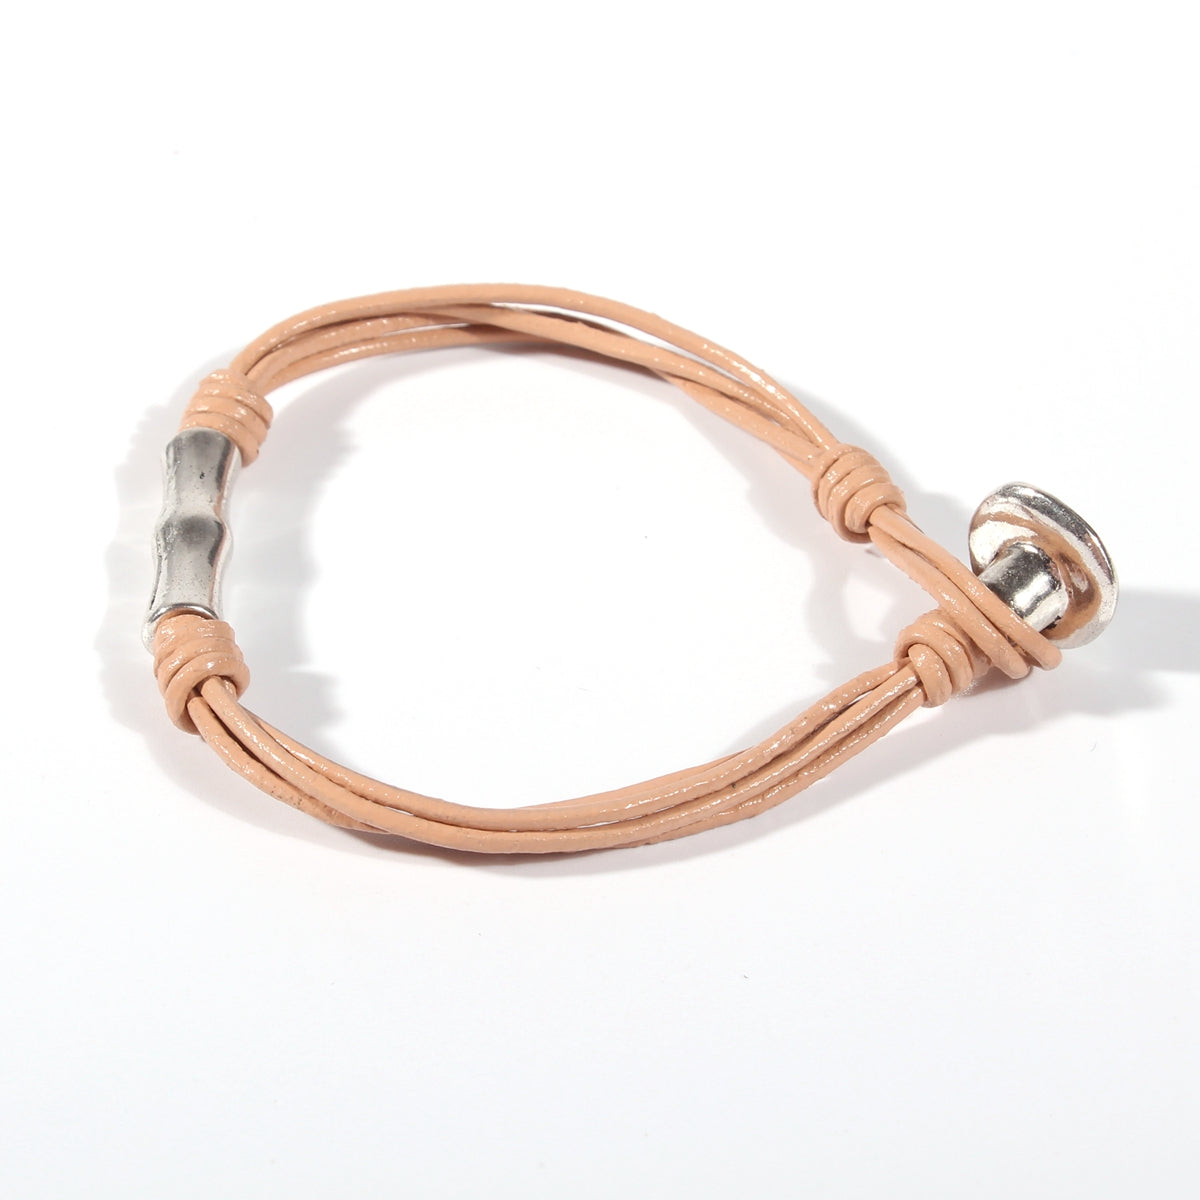 Genuine leather handmade women's bracelet MBR-08